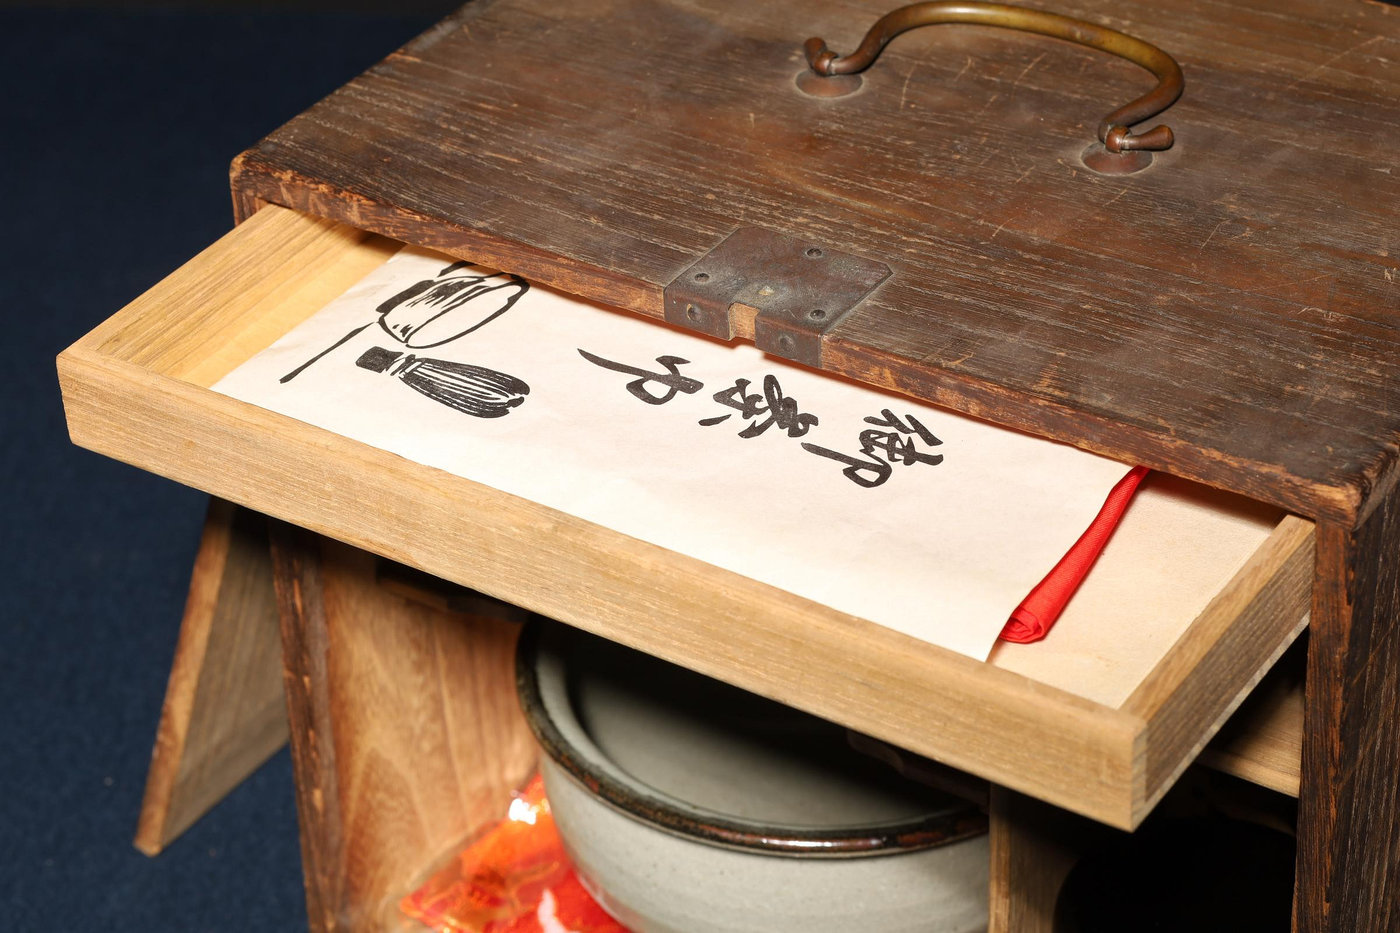 2/14結標日本煎茶道具原木煎茶箱A020250 -茶道具日本茶道品茶煎茶器 